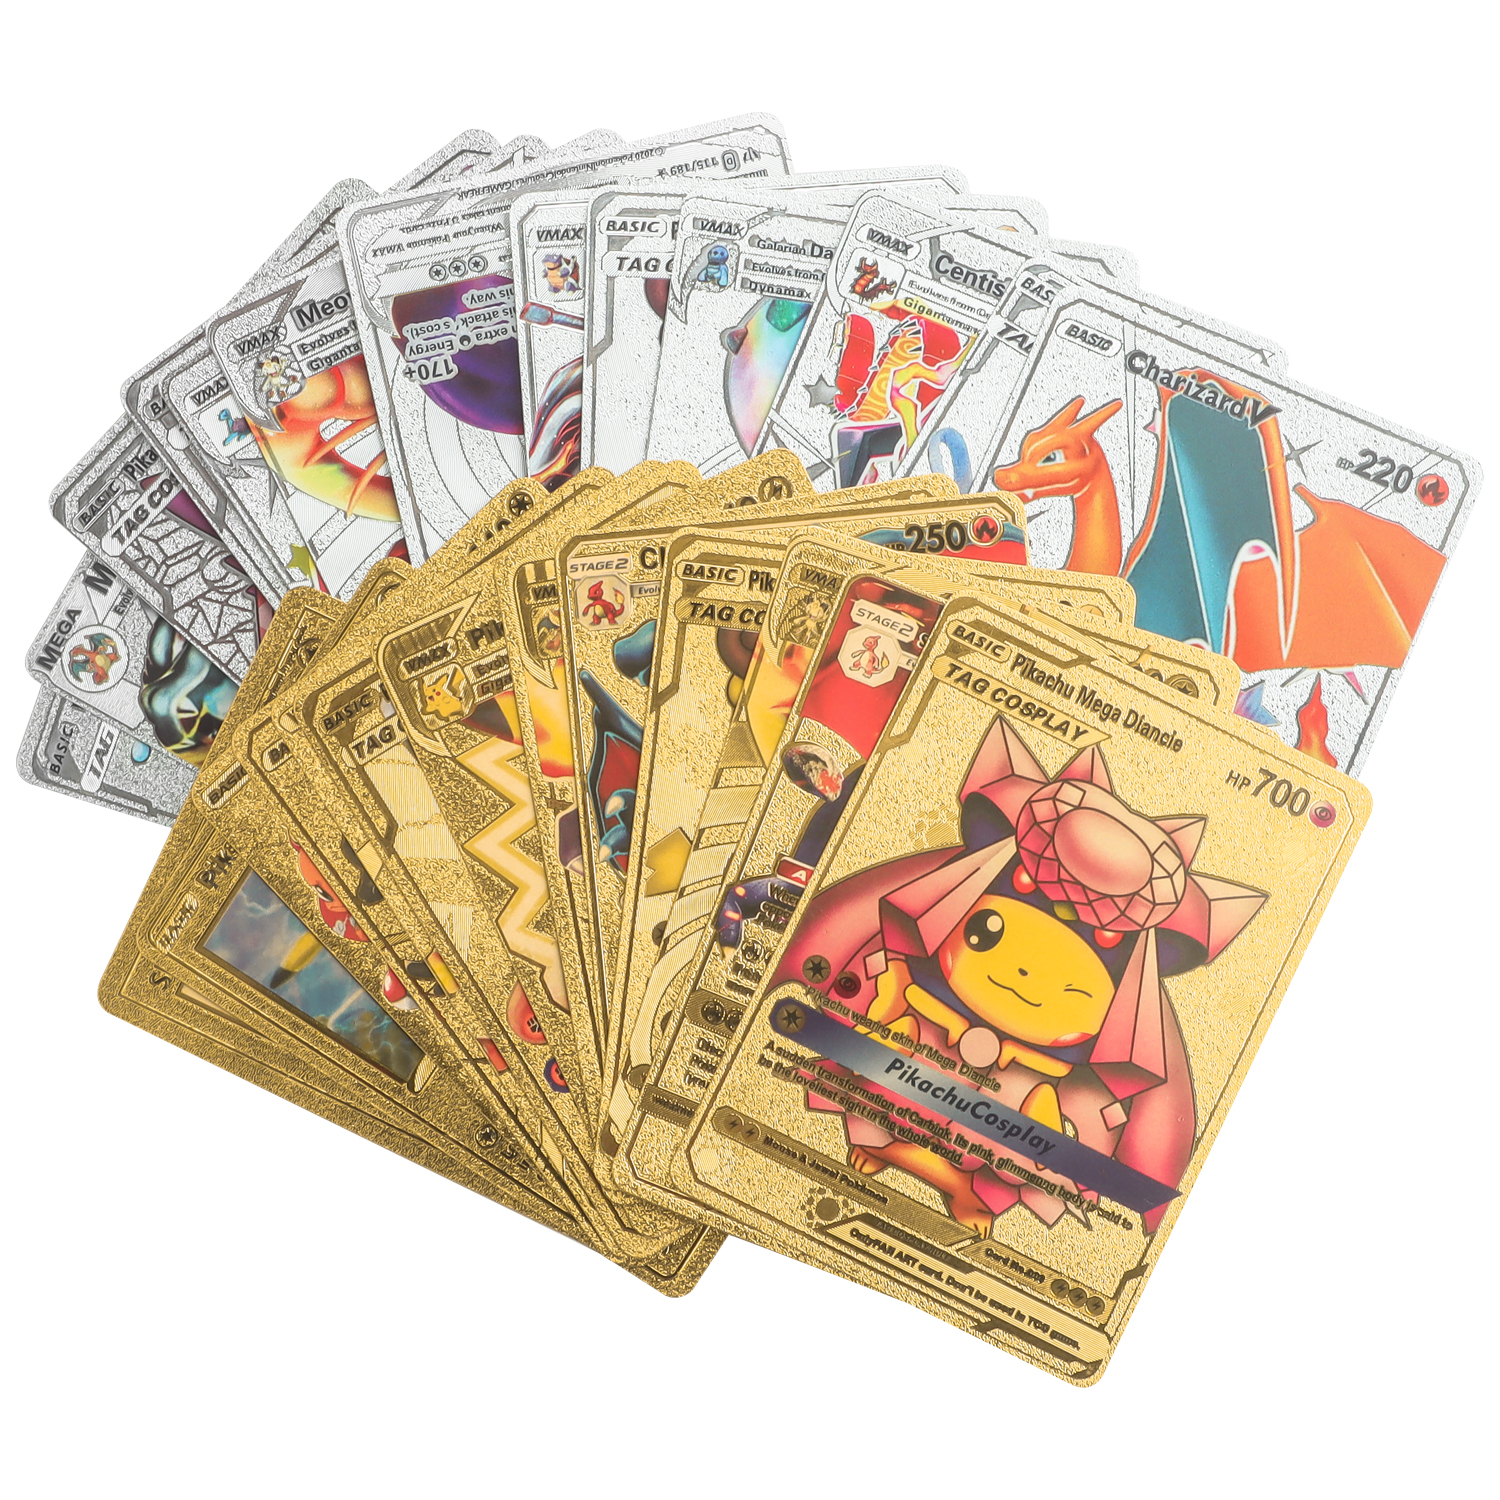 Oferta de tarjetas Tesco Pokemon